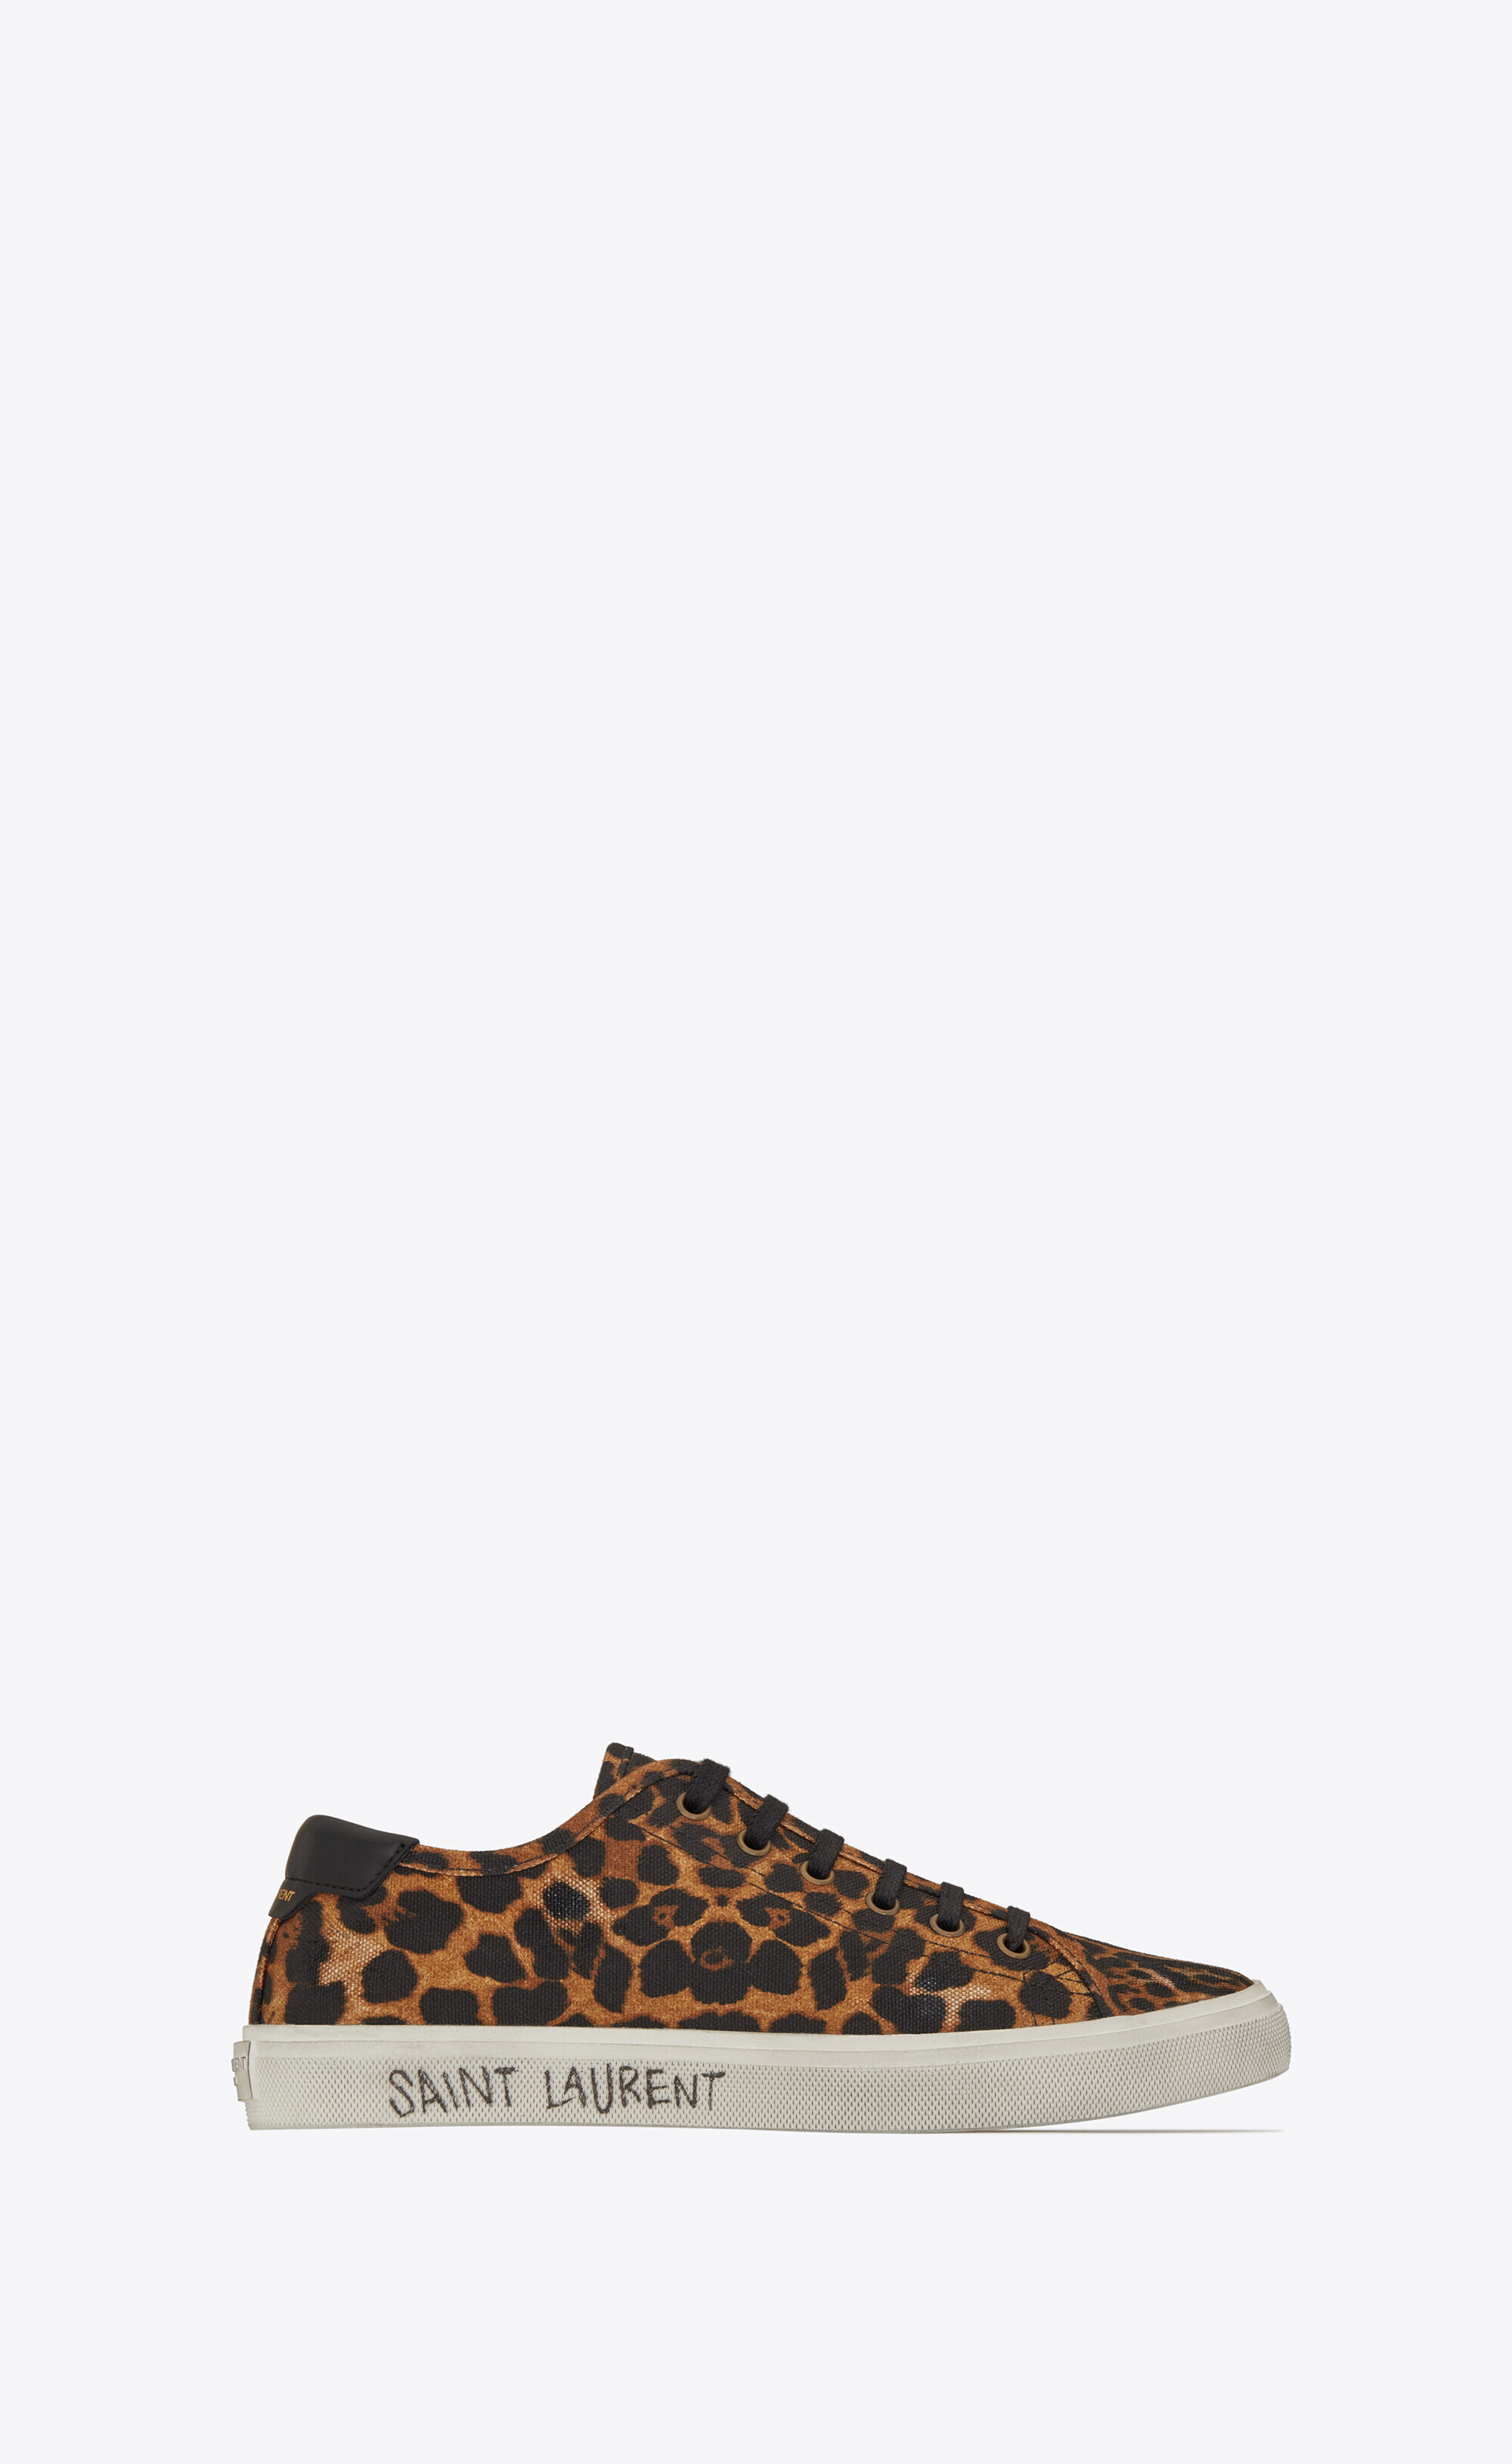 saint laurent cheetah sneakers